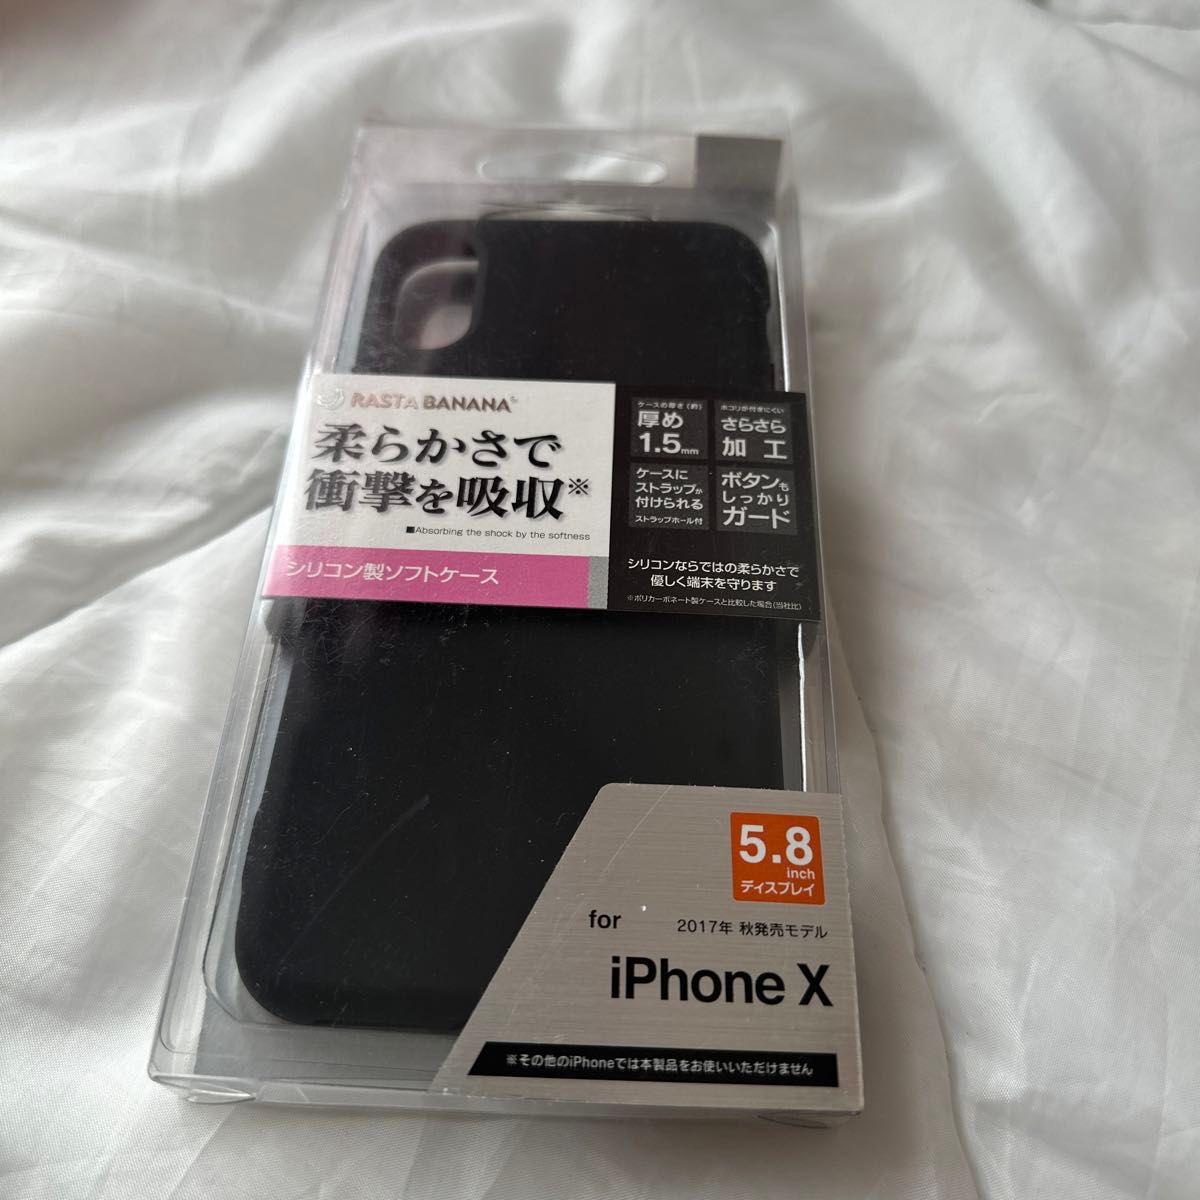 ラスタバナナ シリコン製ソフトケース iPhoneX ブラック/クリア ストラップホール さらさら加工 厚さ1.5mm 